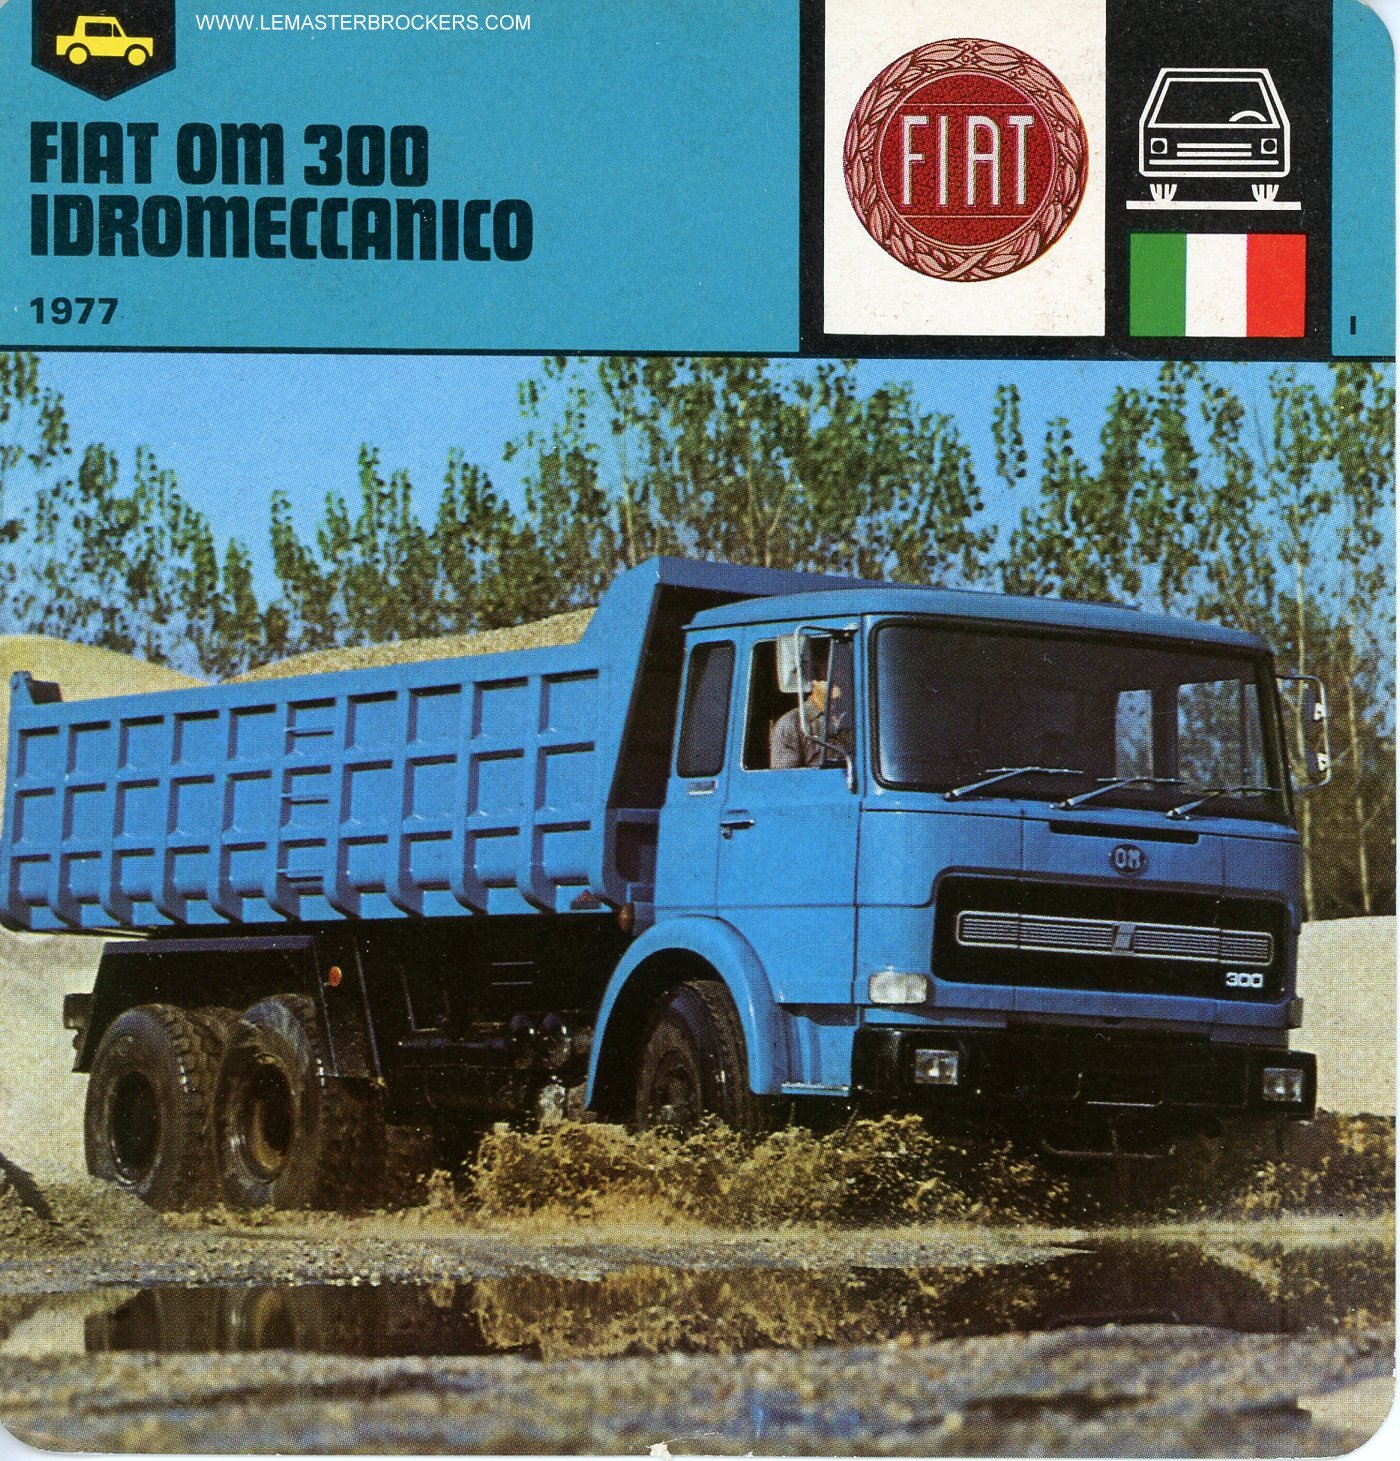 FICHE CAMION FIAT OM 300 IDROMECCANICO 1977